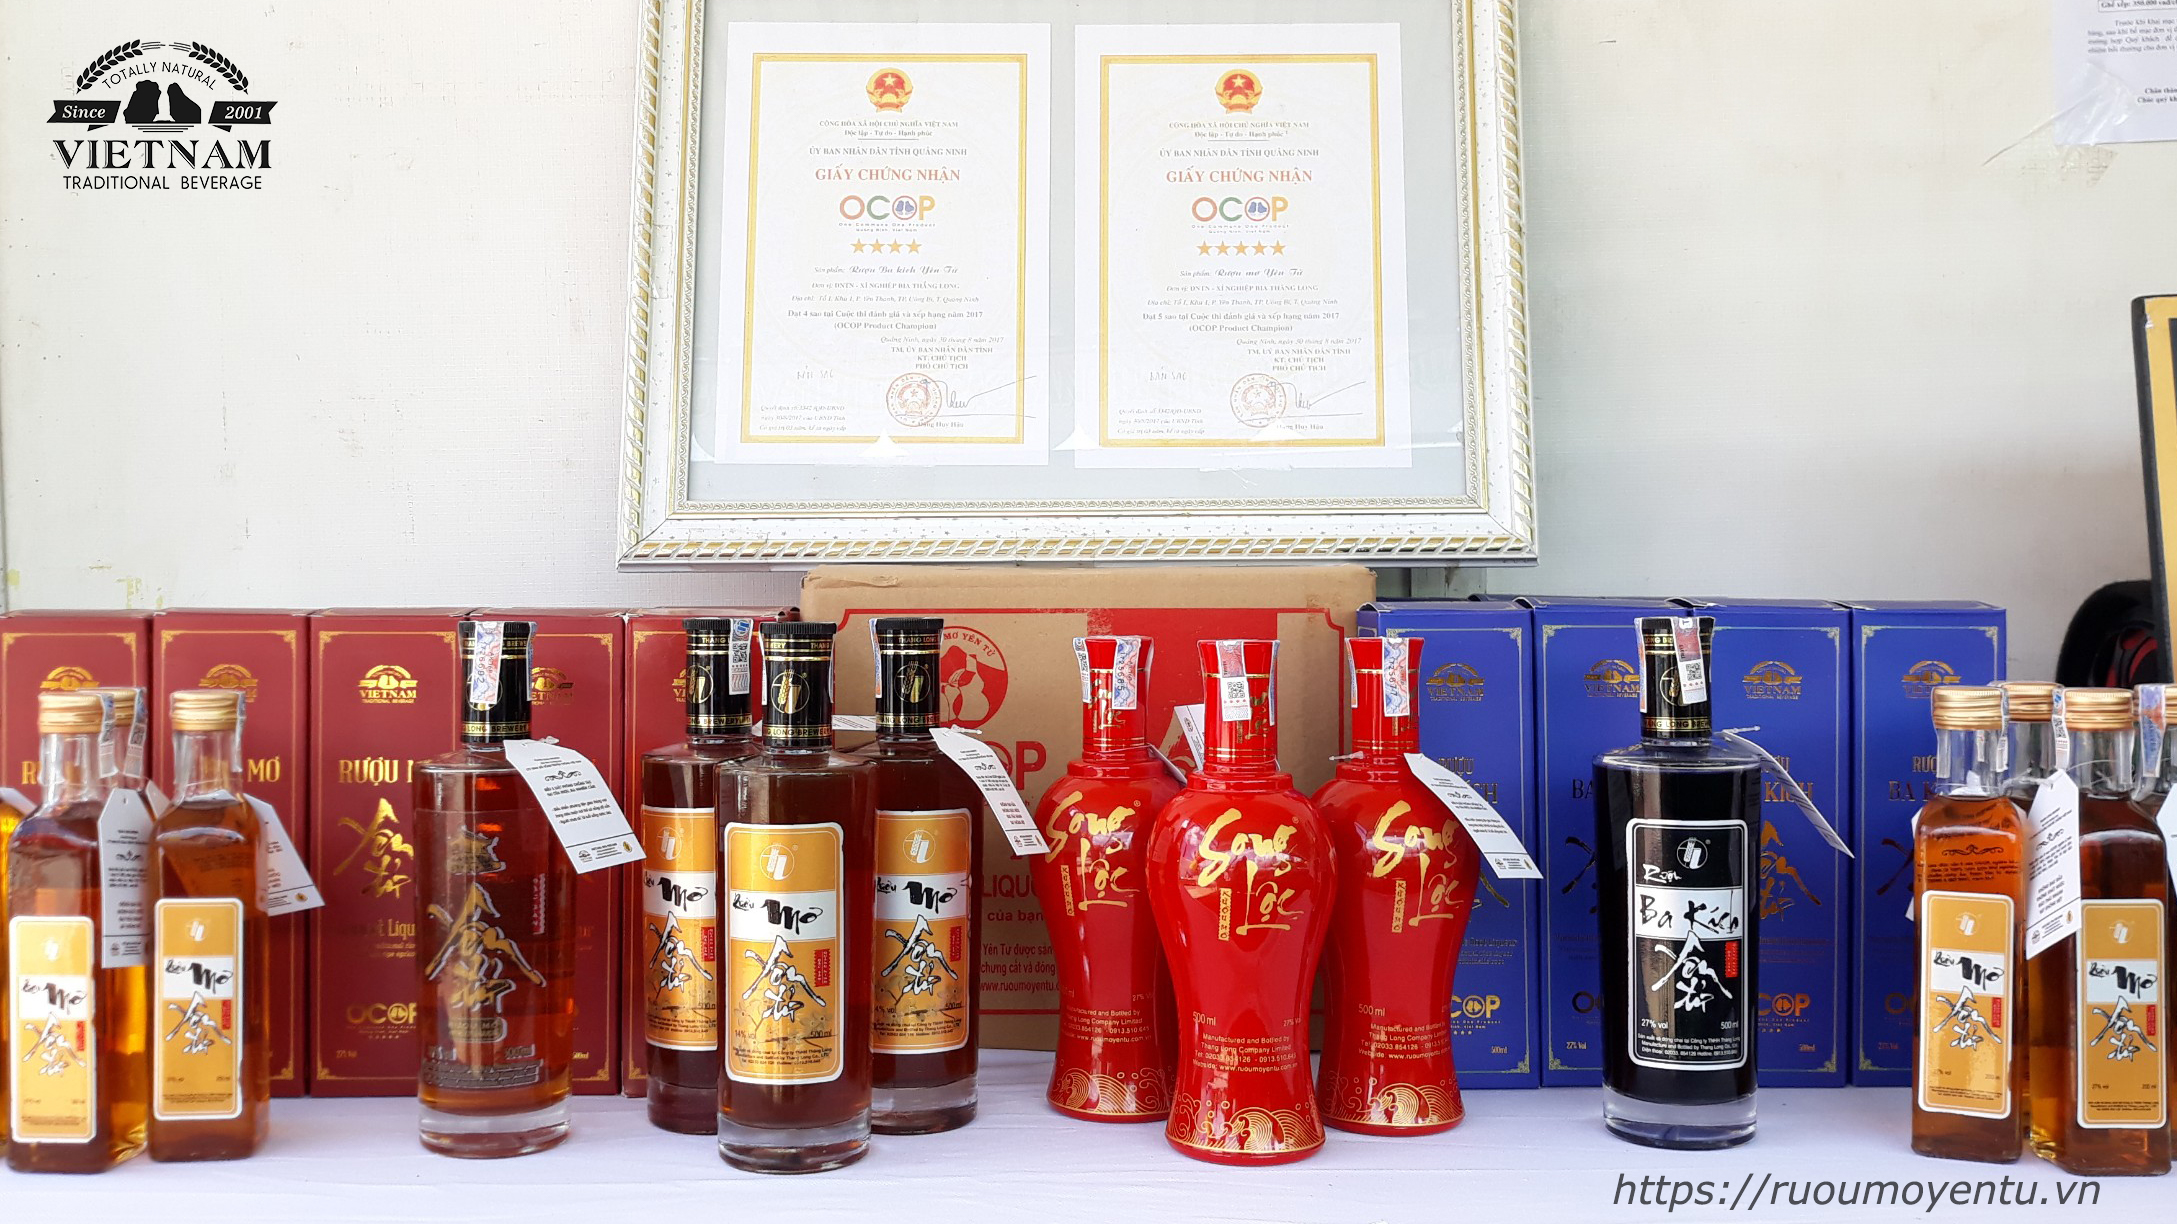 Rượu Yên Tử tại Liên hoan ẩm thực Quảng Ninh 2020